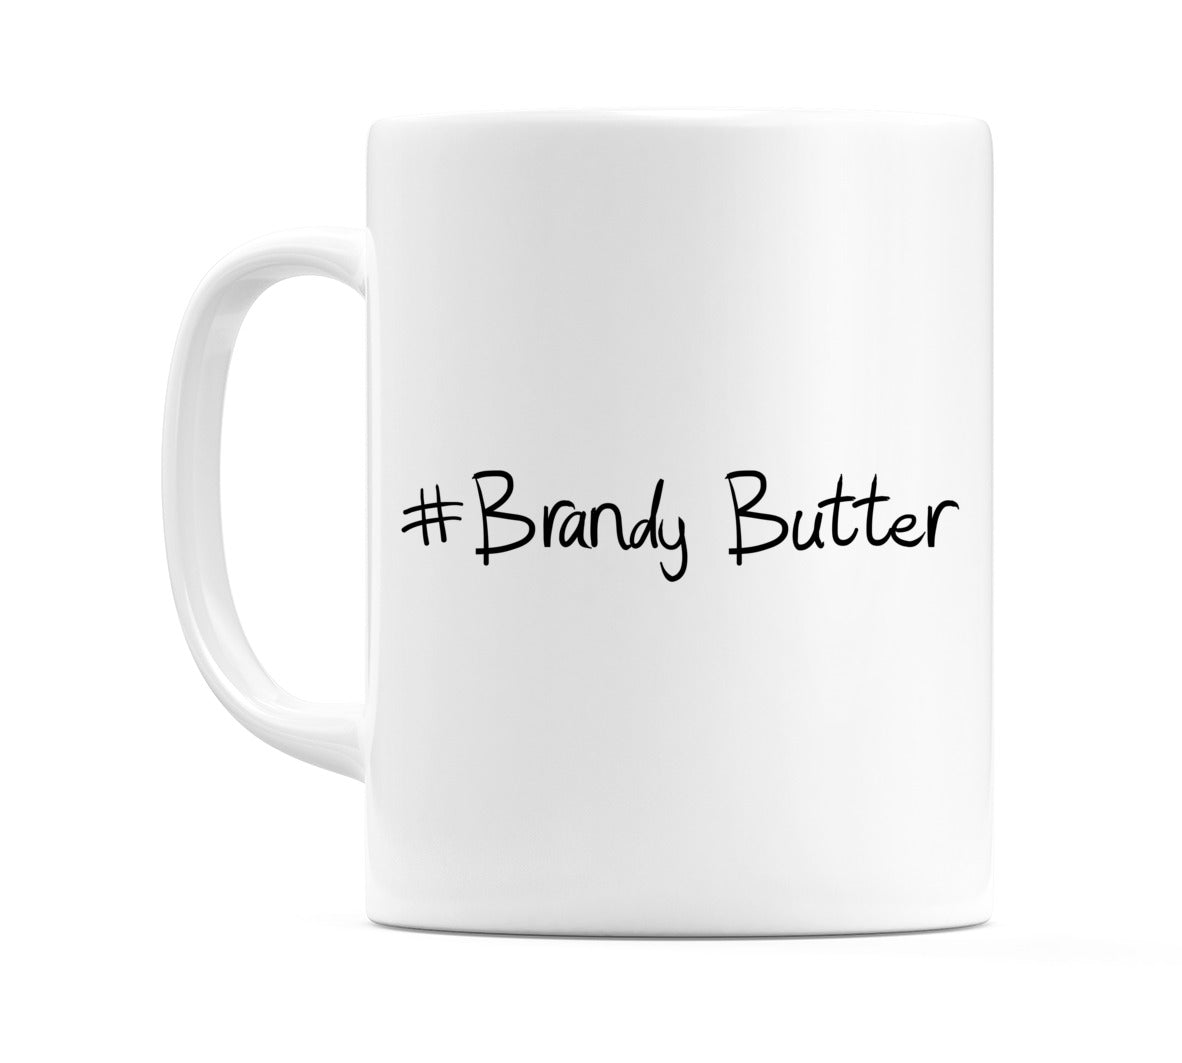 #Brandy Butter Mug